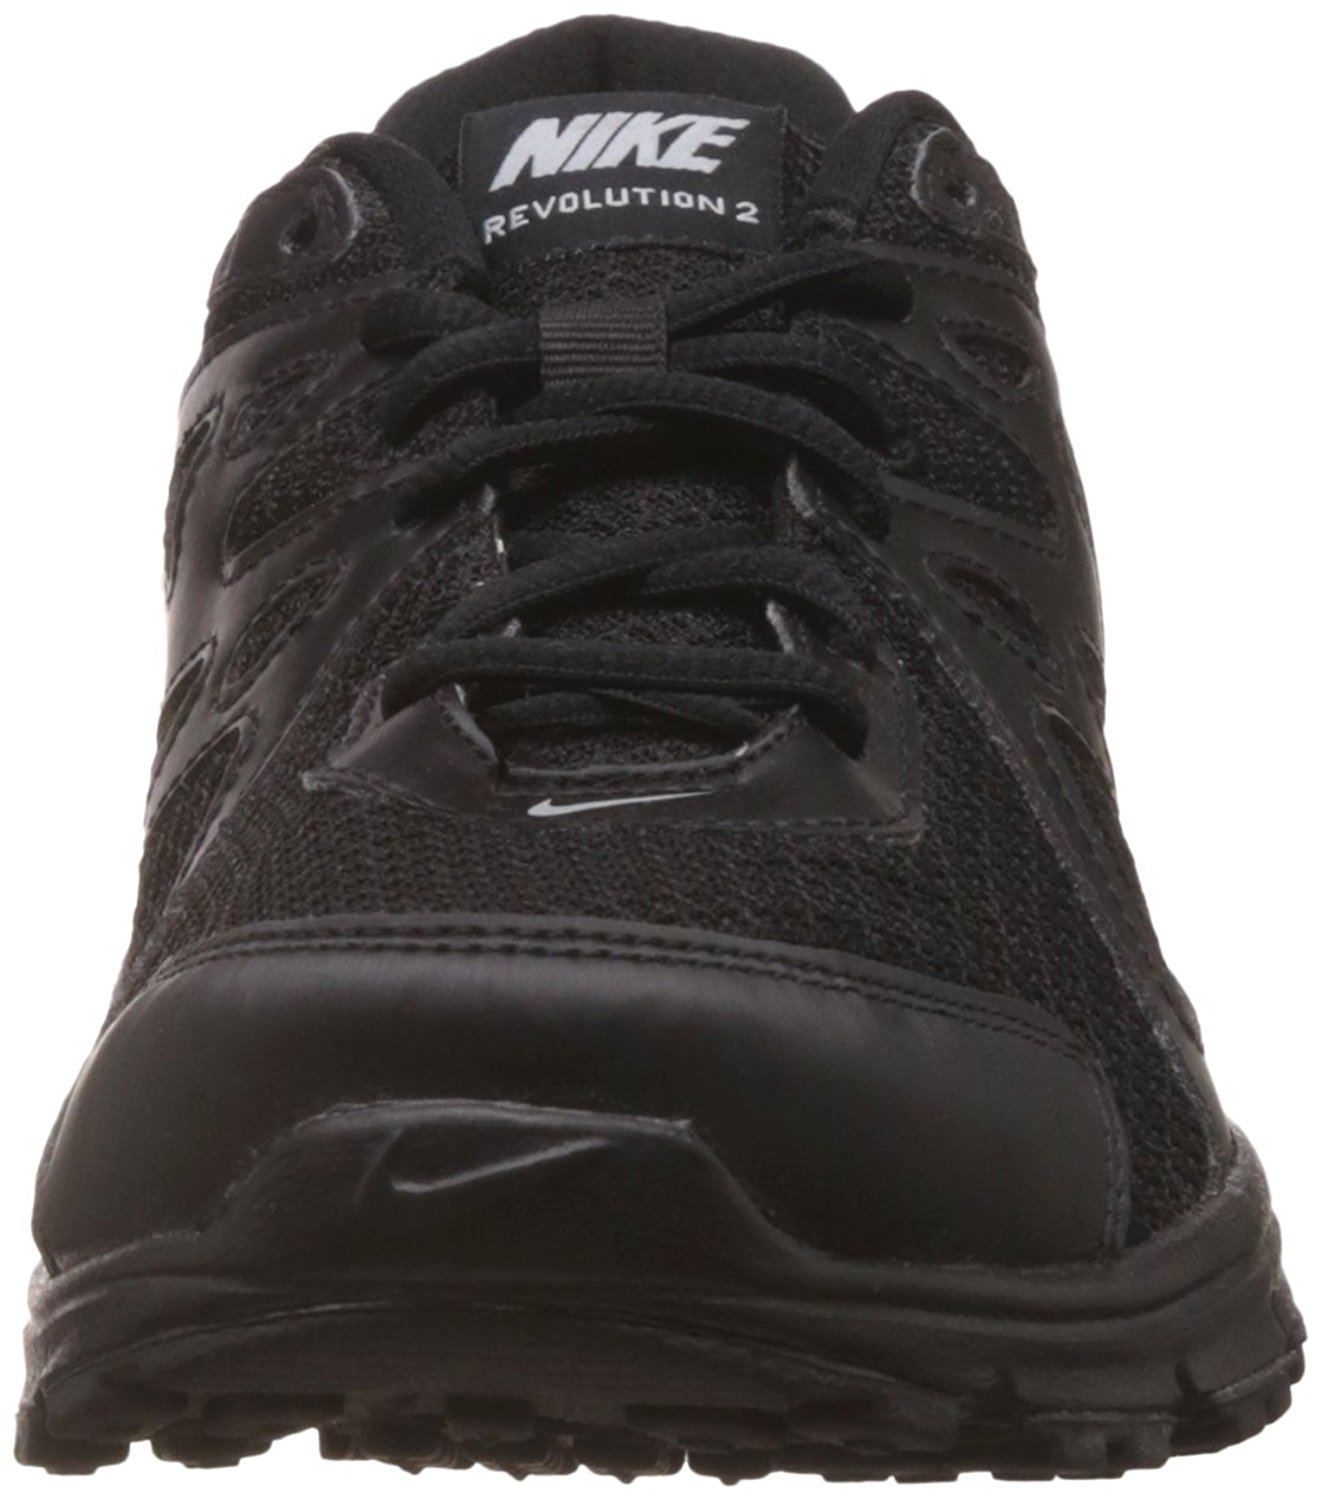 Buy Nike Black Men's Revolution 2 MSL Online - Get 53% Off